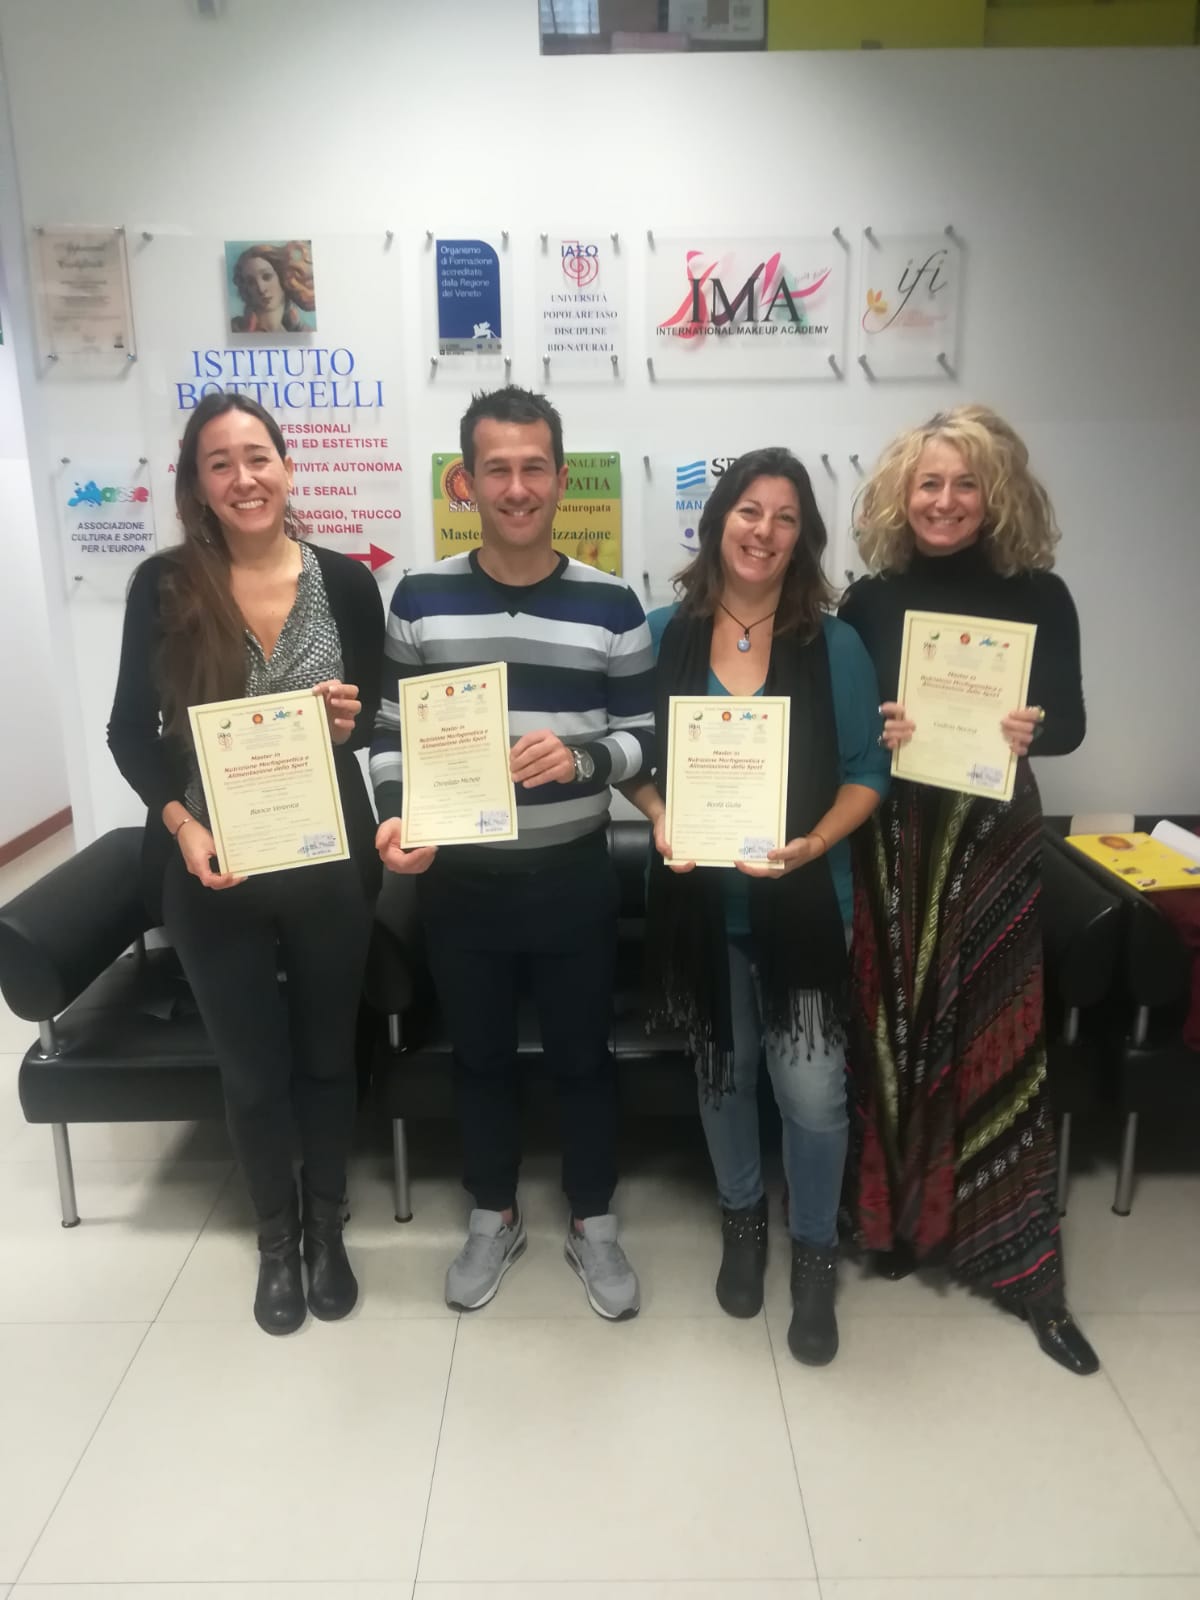 28 ottobre 2018, sede di Conegliano: congratulazioni anche a Michele, Veronica, Giulia, Norma